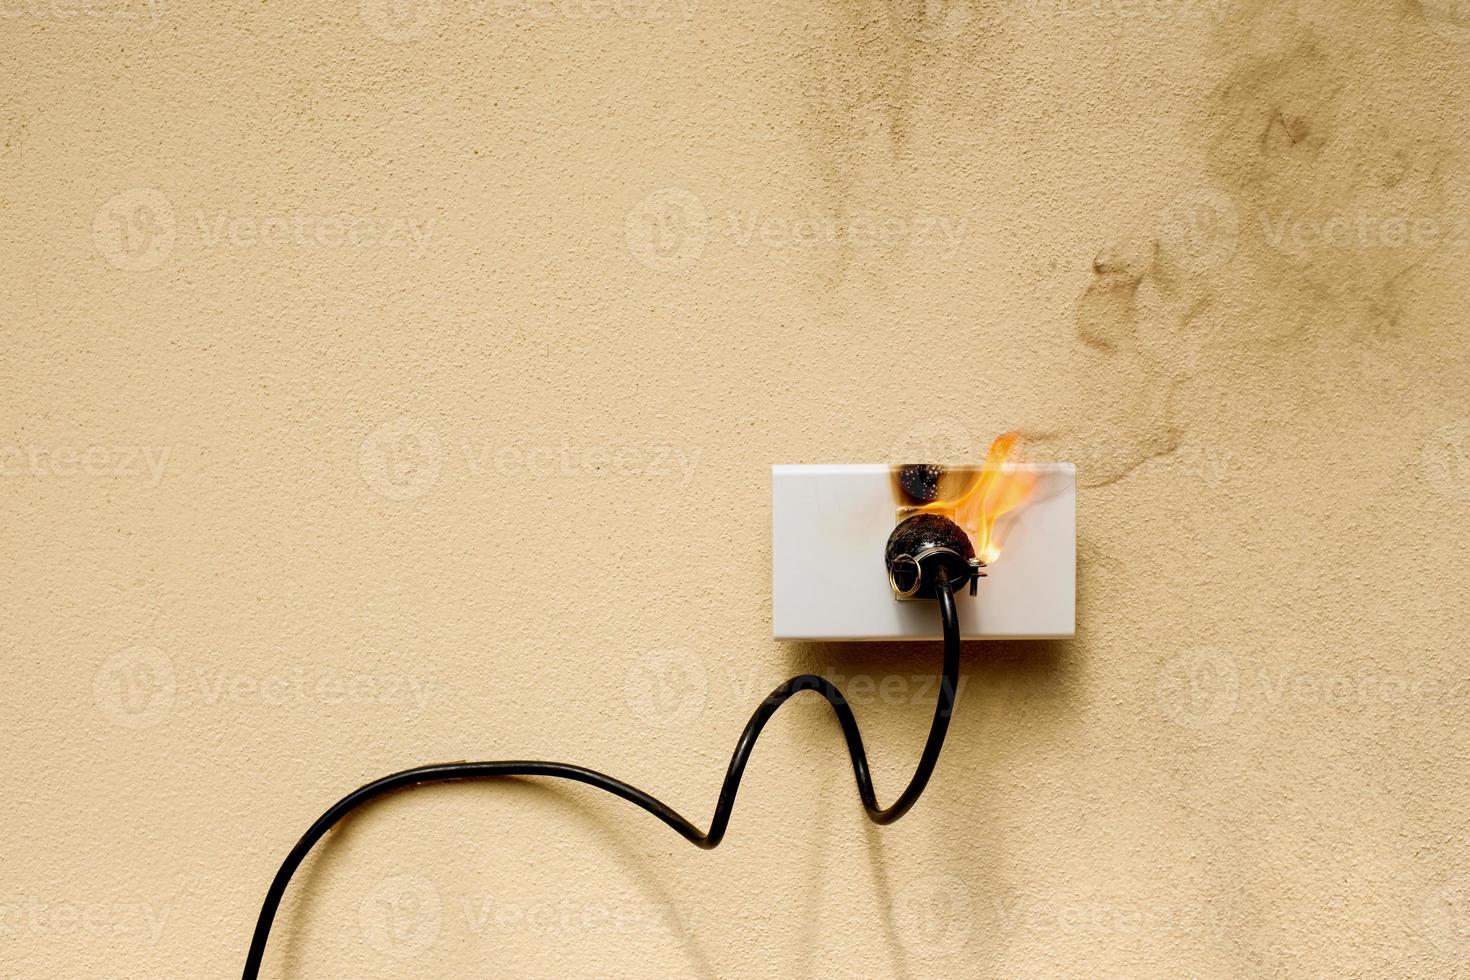 sur la prise de courant électrique en feu sur le fond du mur de béton photo